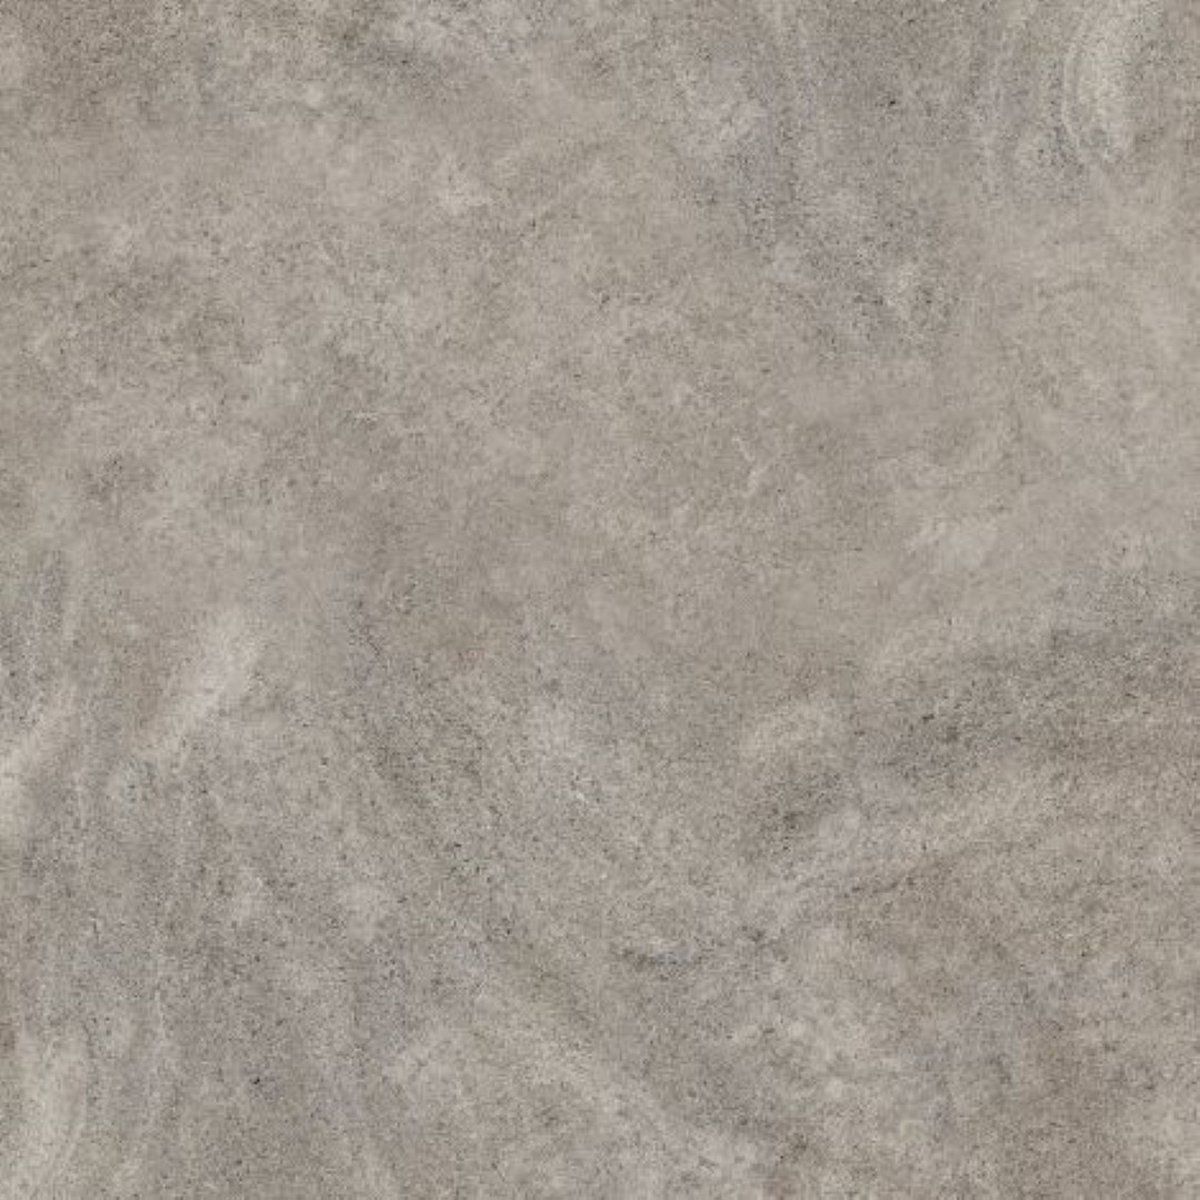 Mixed Stone Grey keramische tegels ceramica terrazza 60x60x2 cmGard...